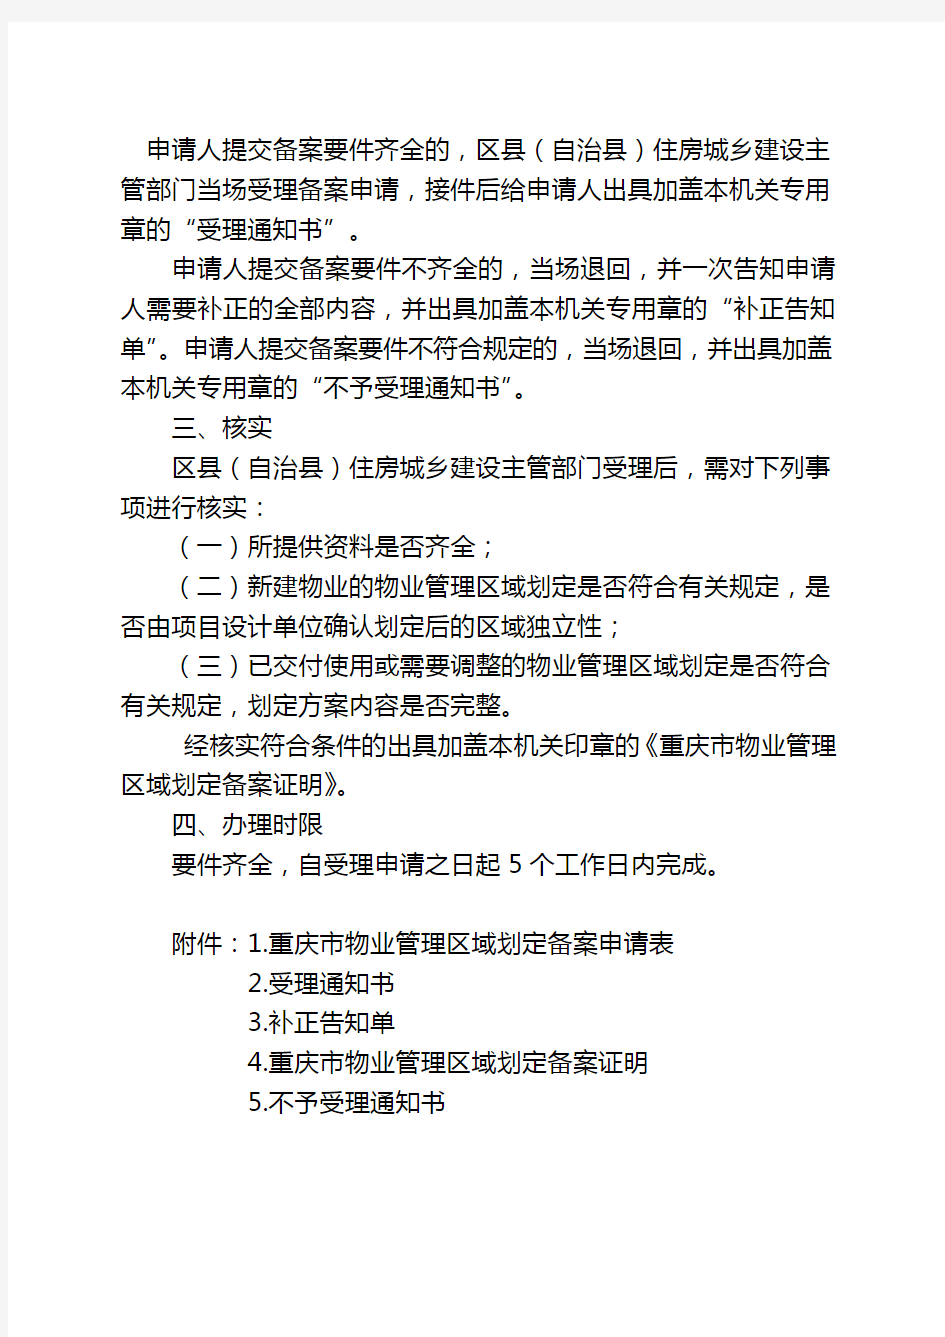 重庆市物业管理区域划定备案程序